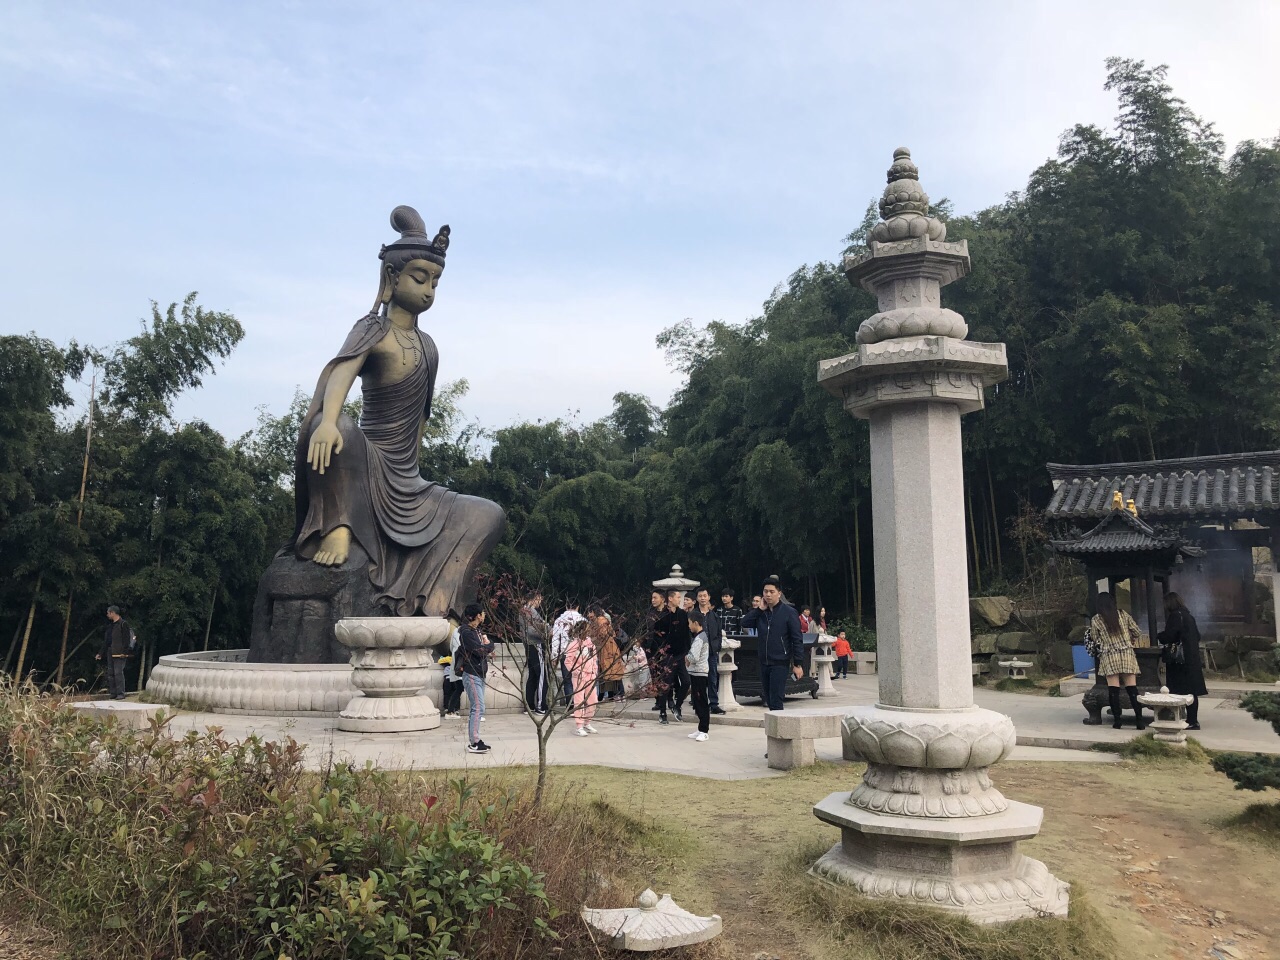 杭州市里的景点游客太多,吃过午饭,跟小伙伴一起开车驶向余杭径山寺